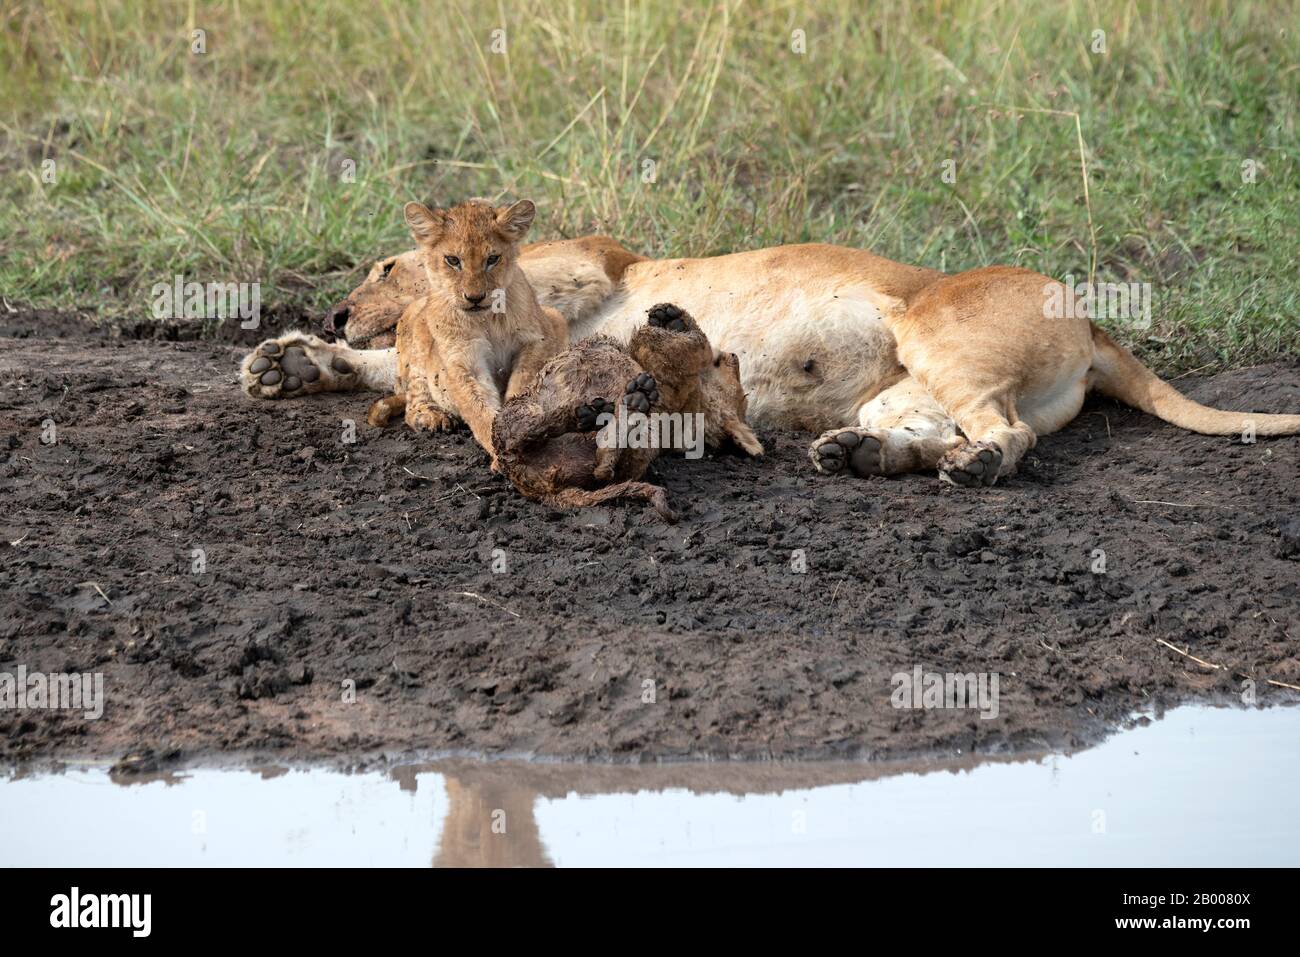 Mère Lion se reposant après un grand repas pendant que les enfants jouent Banque D'Images